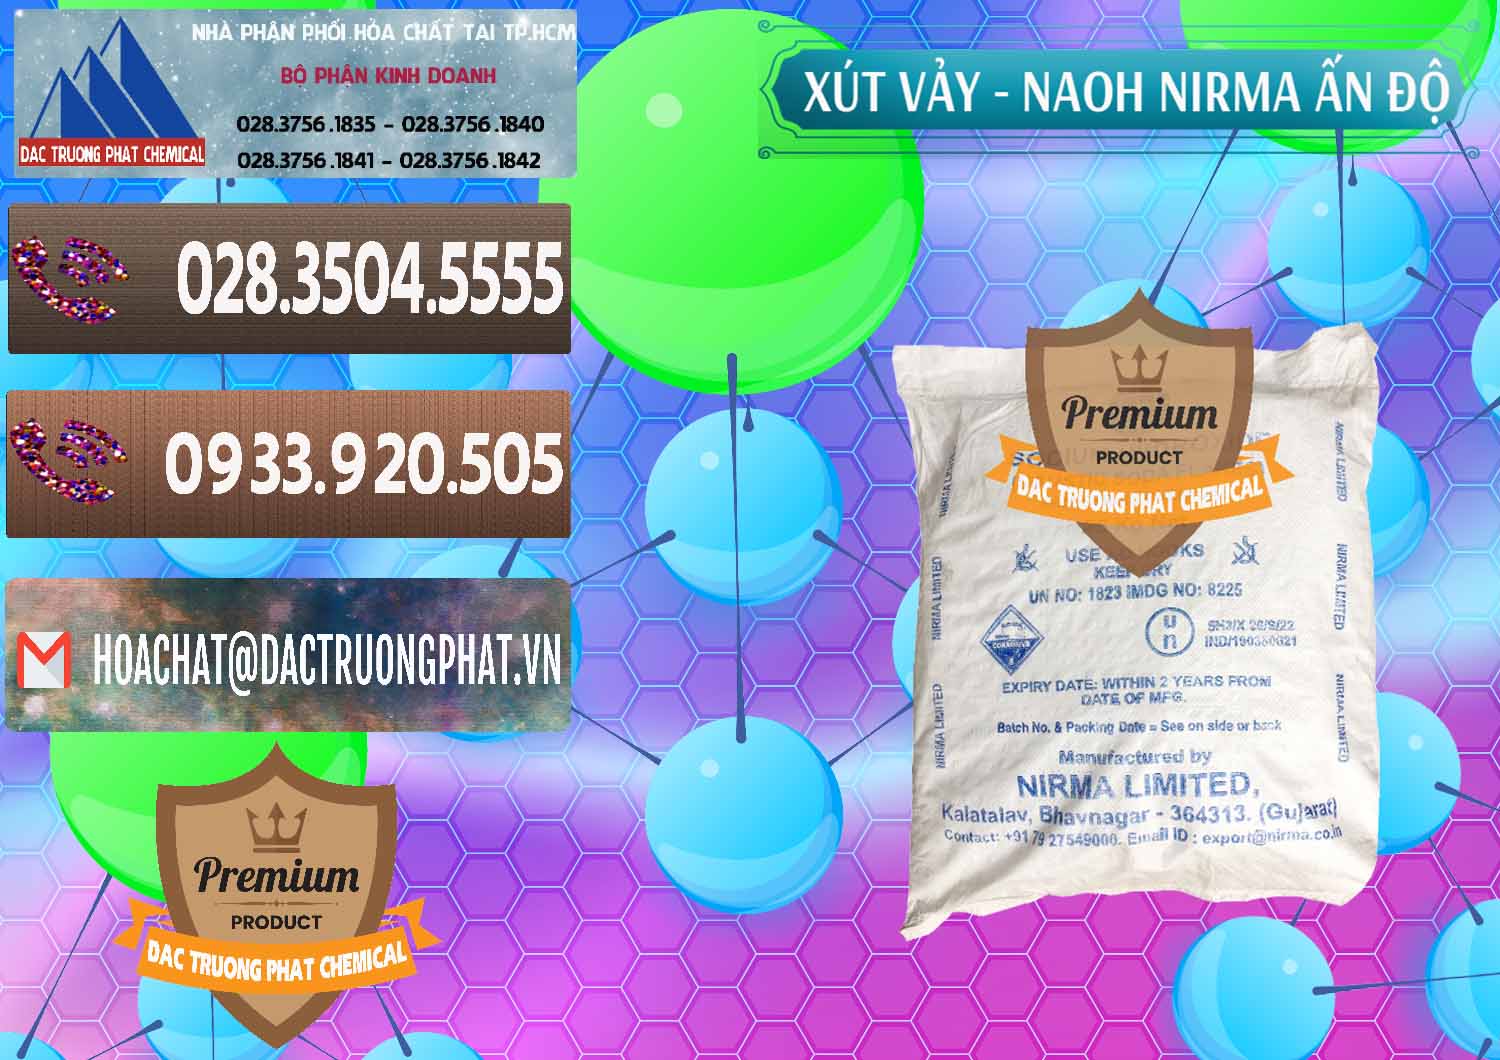 Cty kinh doanh _ bán Xút Vảy - NaOH Vảy Nirma Ấn Độ India - 0371 - Công ty phân phối ( cung cấp ) hóa chất tại TP.HCM - hoachatviet.net